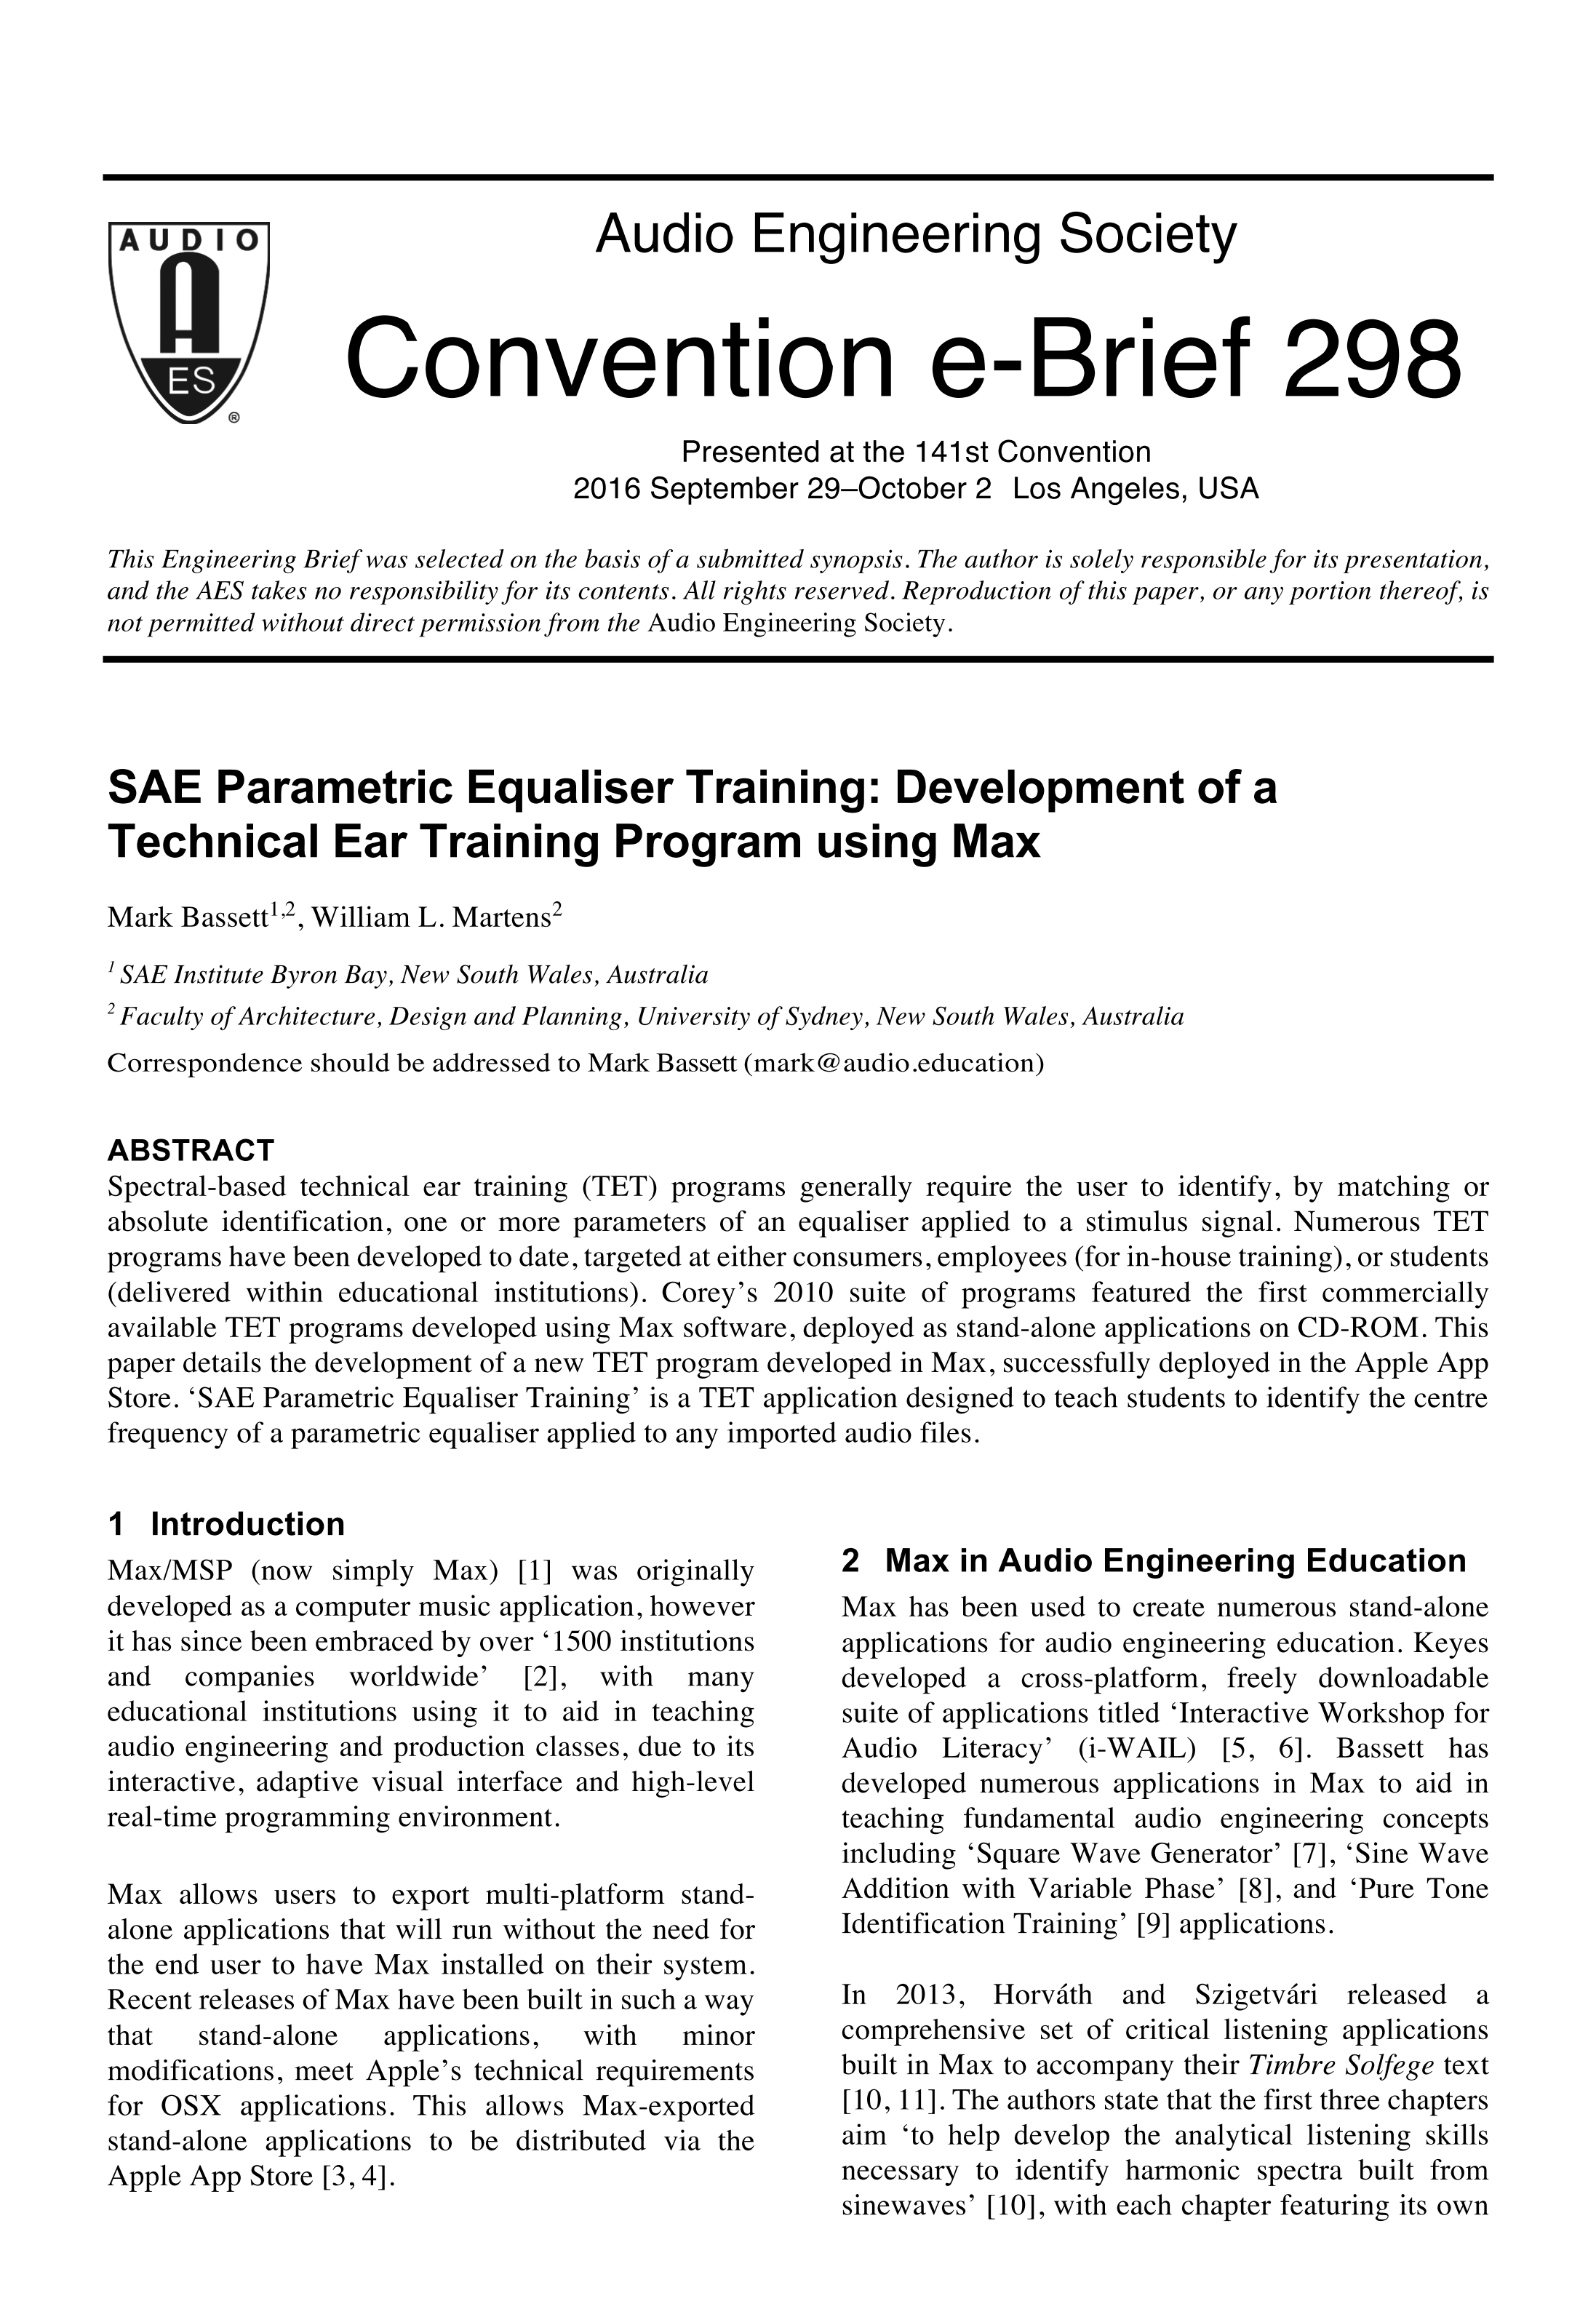 golden ears audio ear training program download